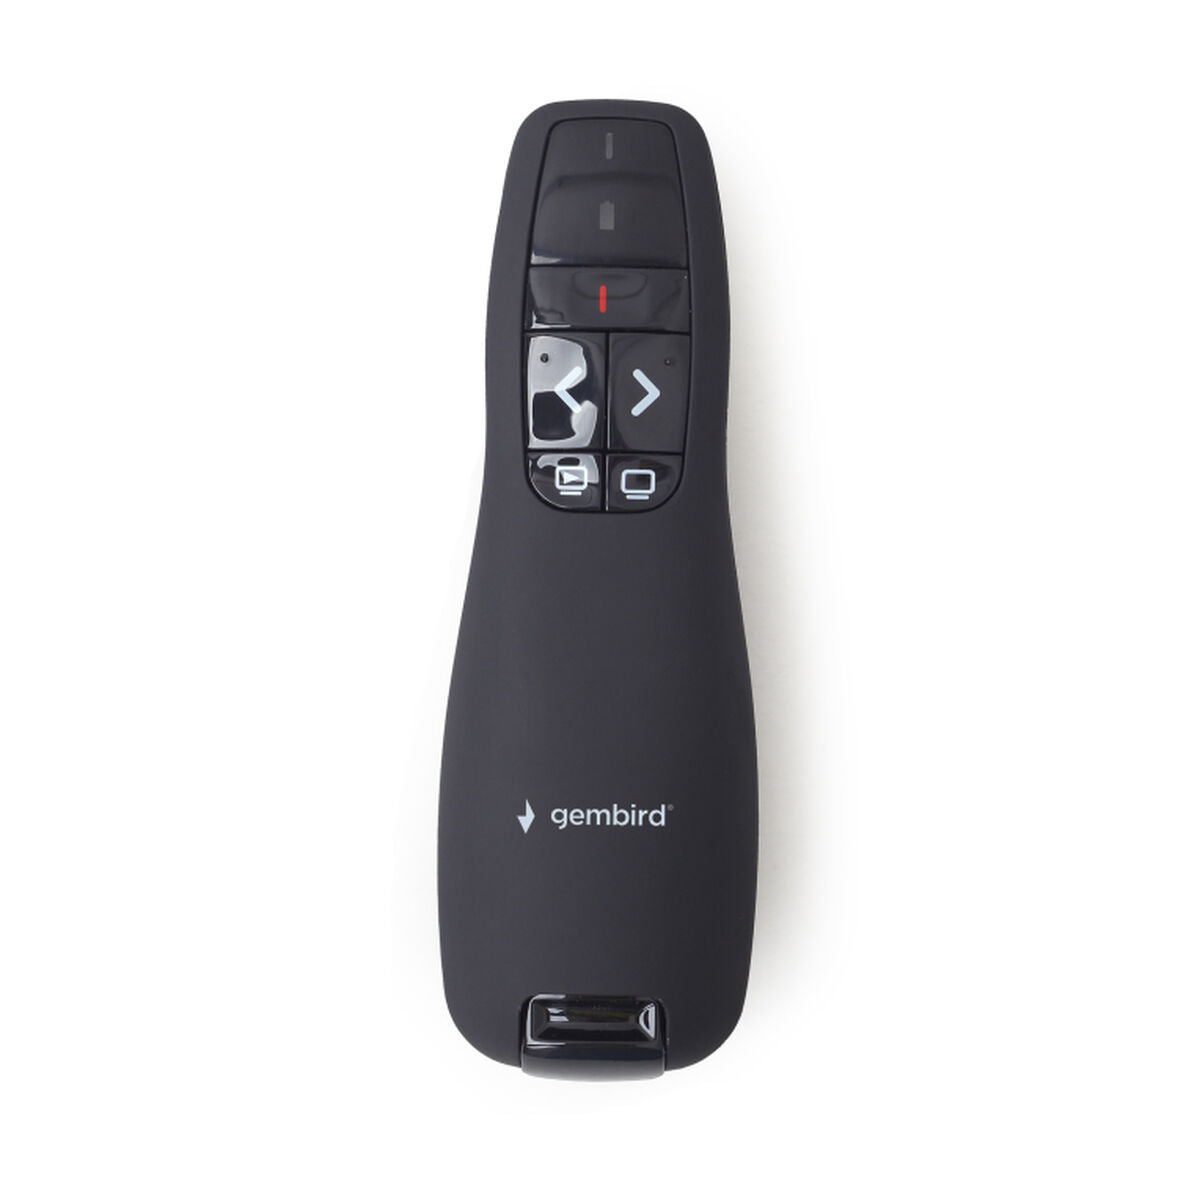 Laserpointer GEMBIRD *Wireless presenter with laser pointer